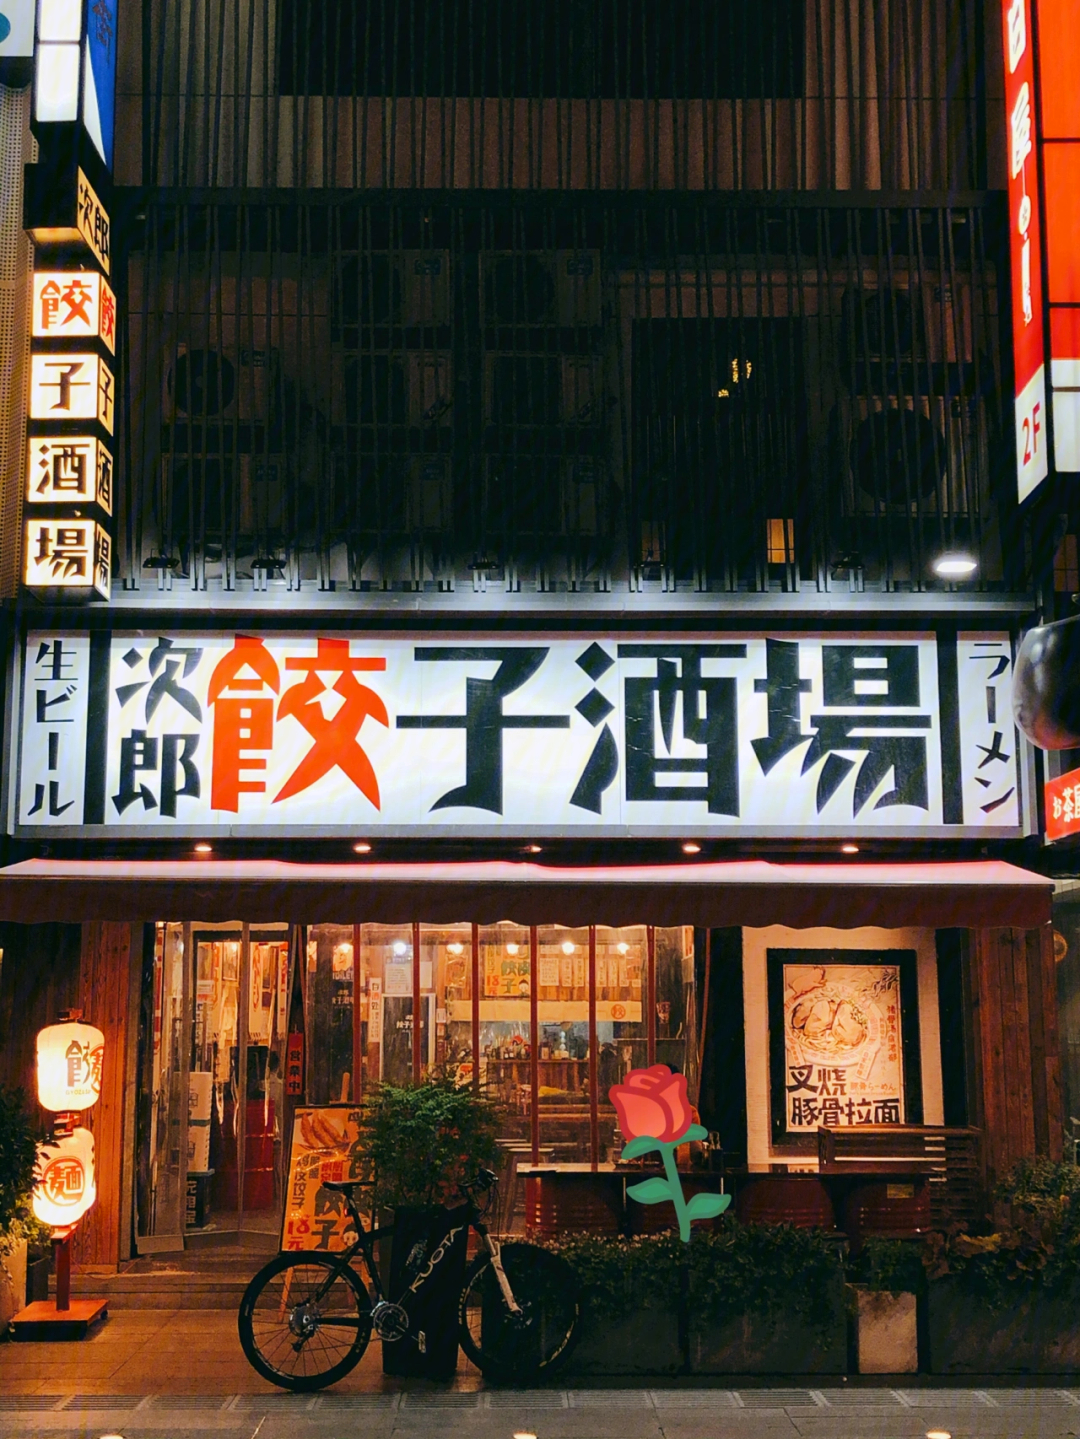 94「次郎饺子酒场(淮海街店)」99餐厅地址:淮海街4号9015营业